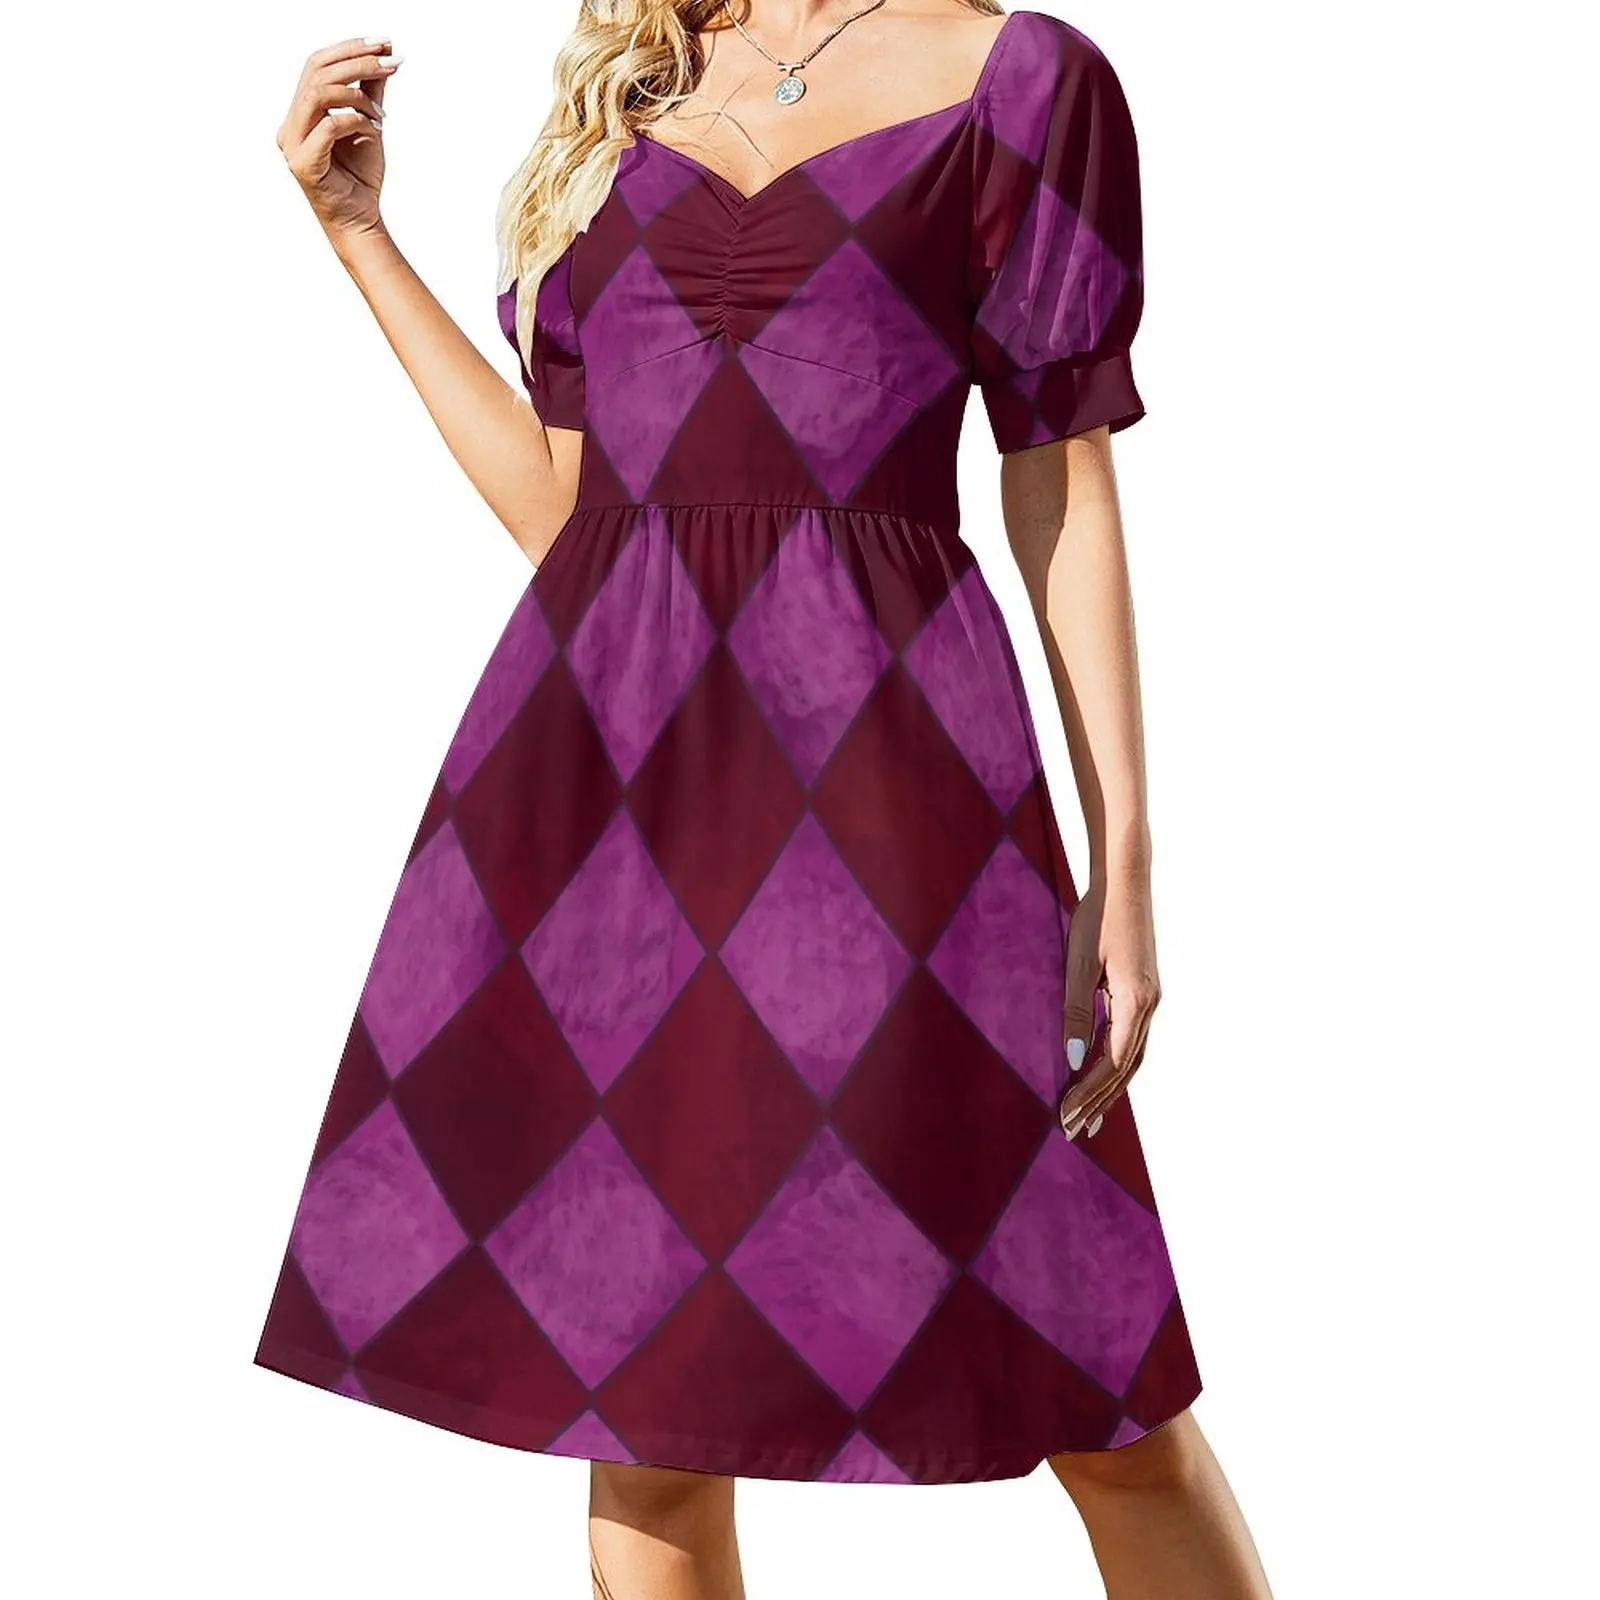 

Lili Zanotto Argyle/Diamond pattern Sleeveless Dress Long dresses Dresses gala